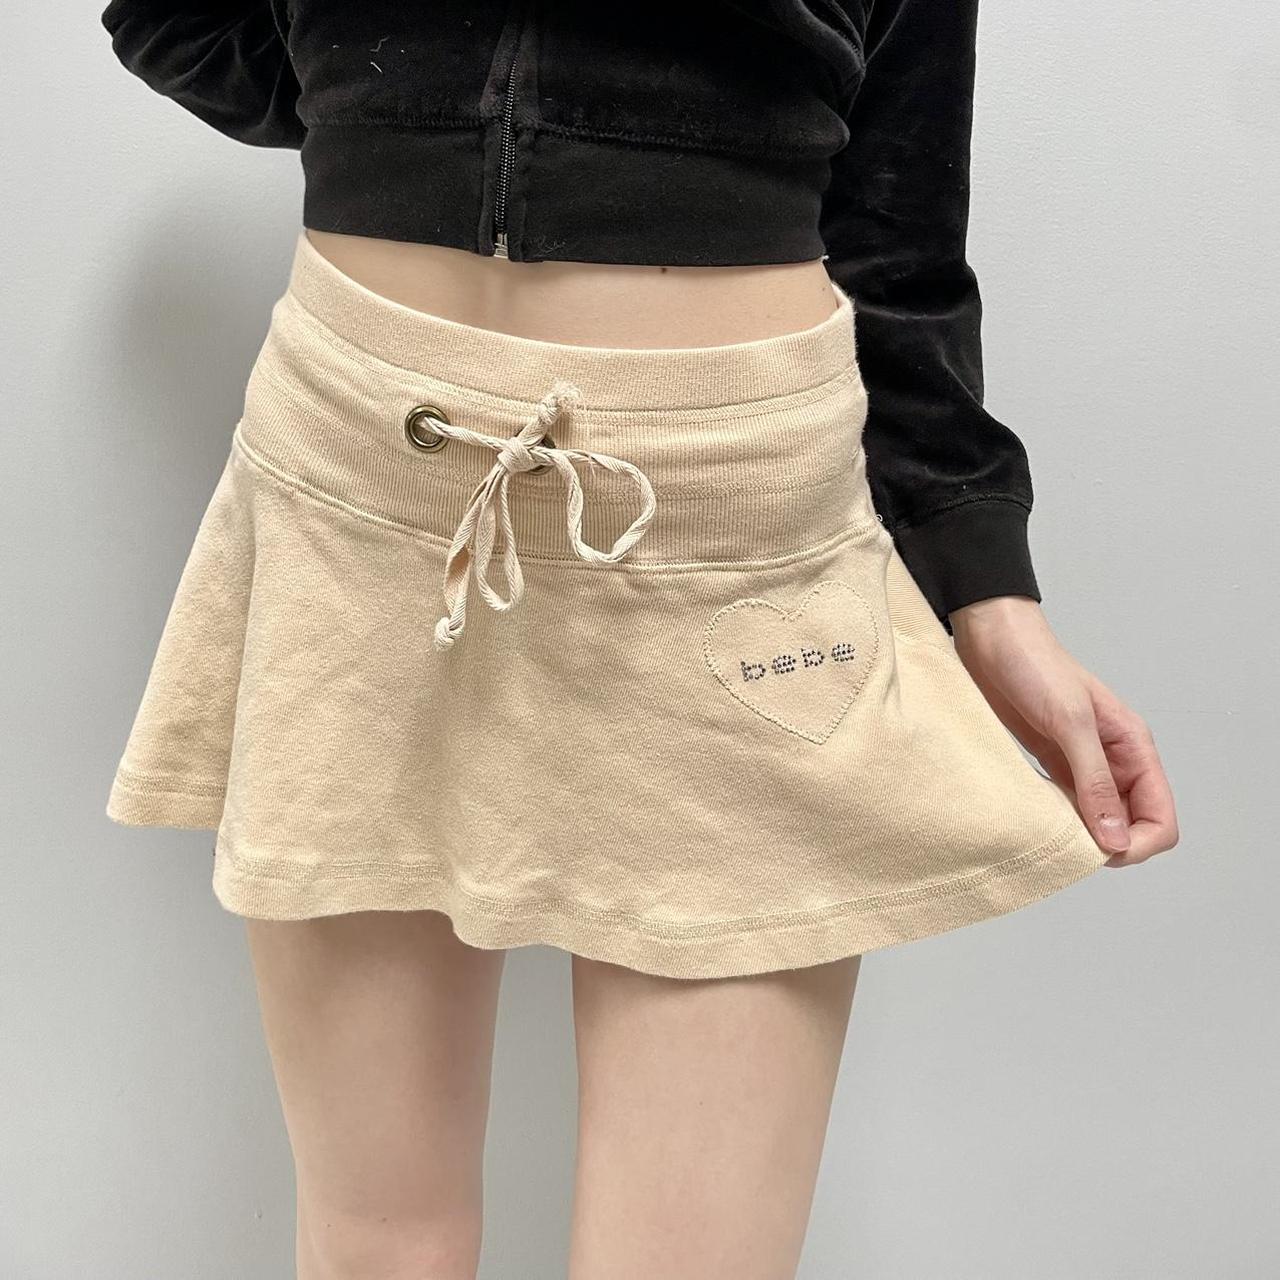 Bebe Women's Cream and Tan Skirt